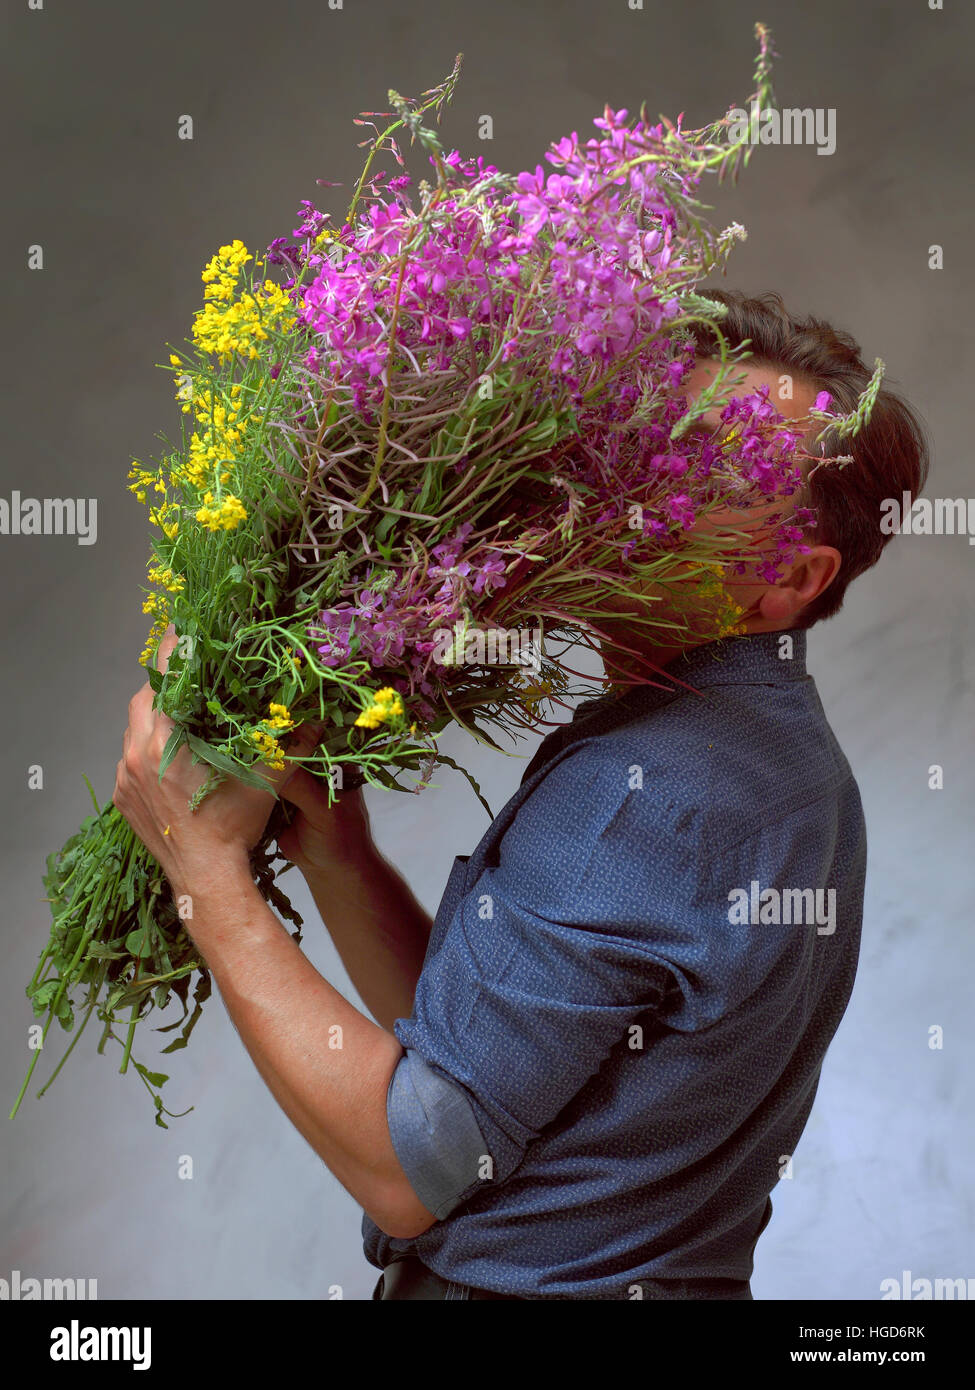 Homme tenant un énorme bouquet de fleurs sauvages, un homme est venu sur une date avec des fleurs, l'homme en attente de son amour Banque D'Images